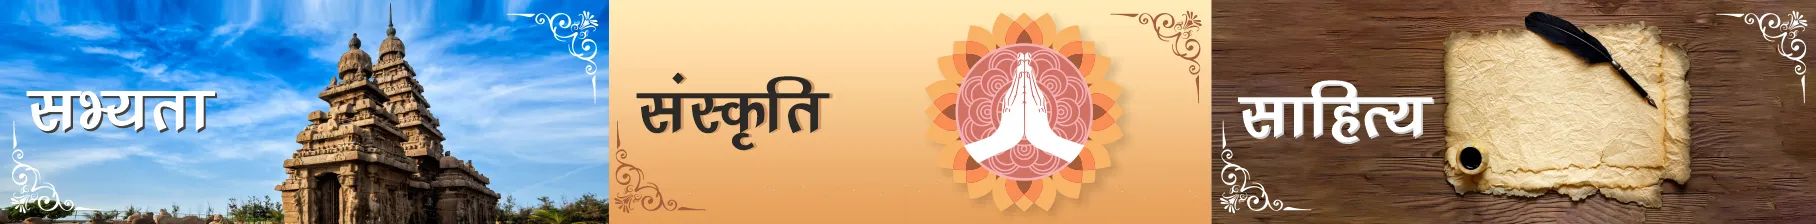 Hindi-Sanskriti